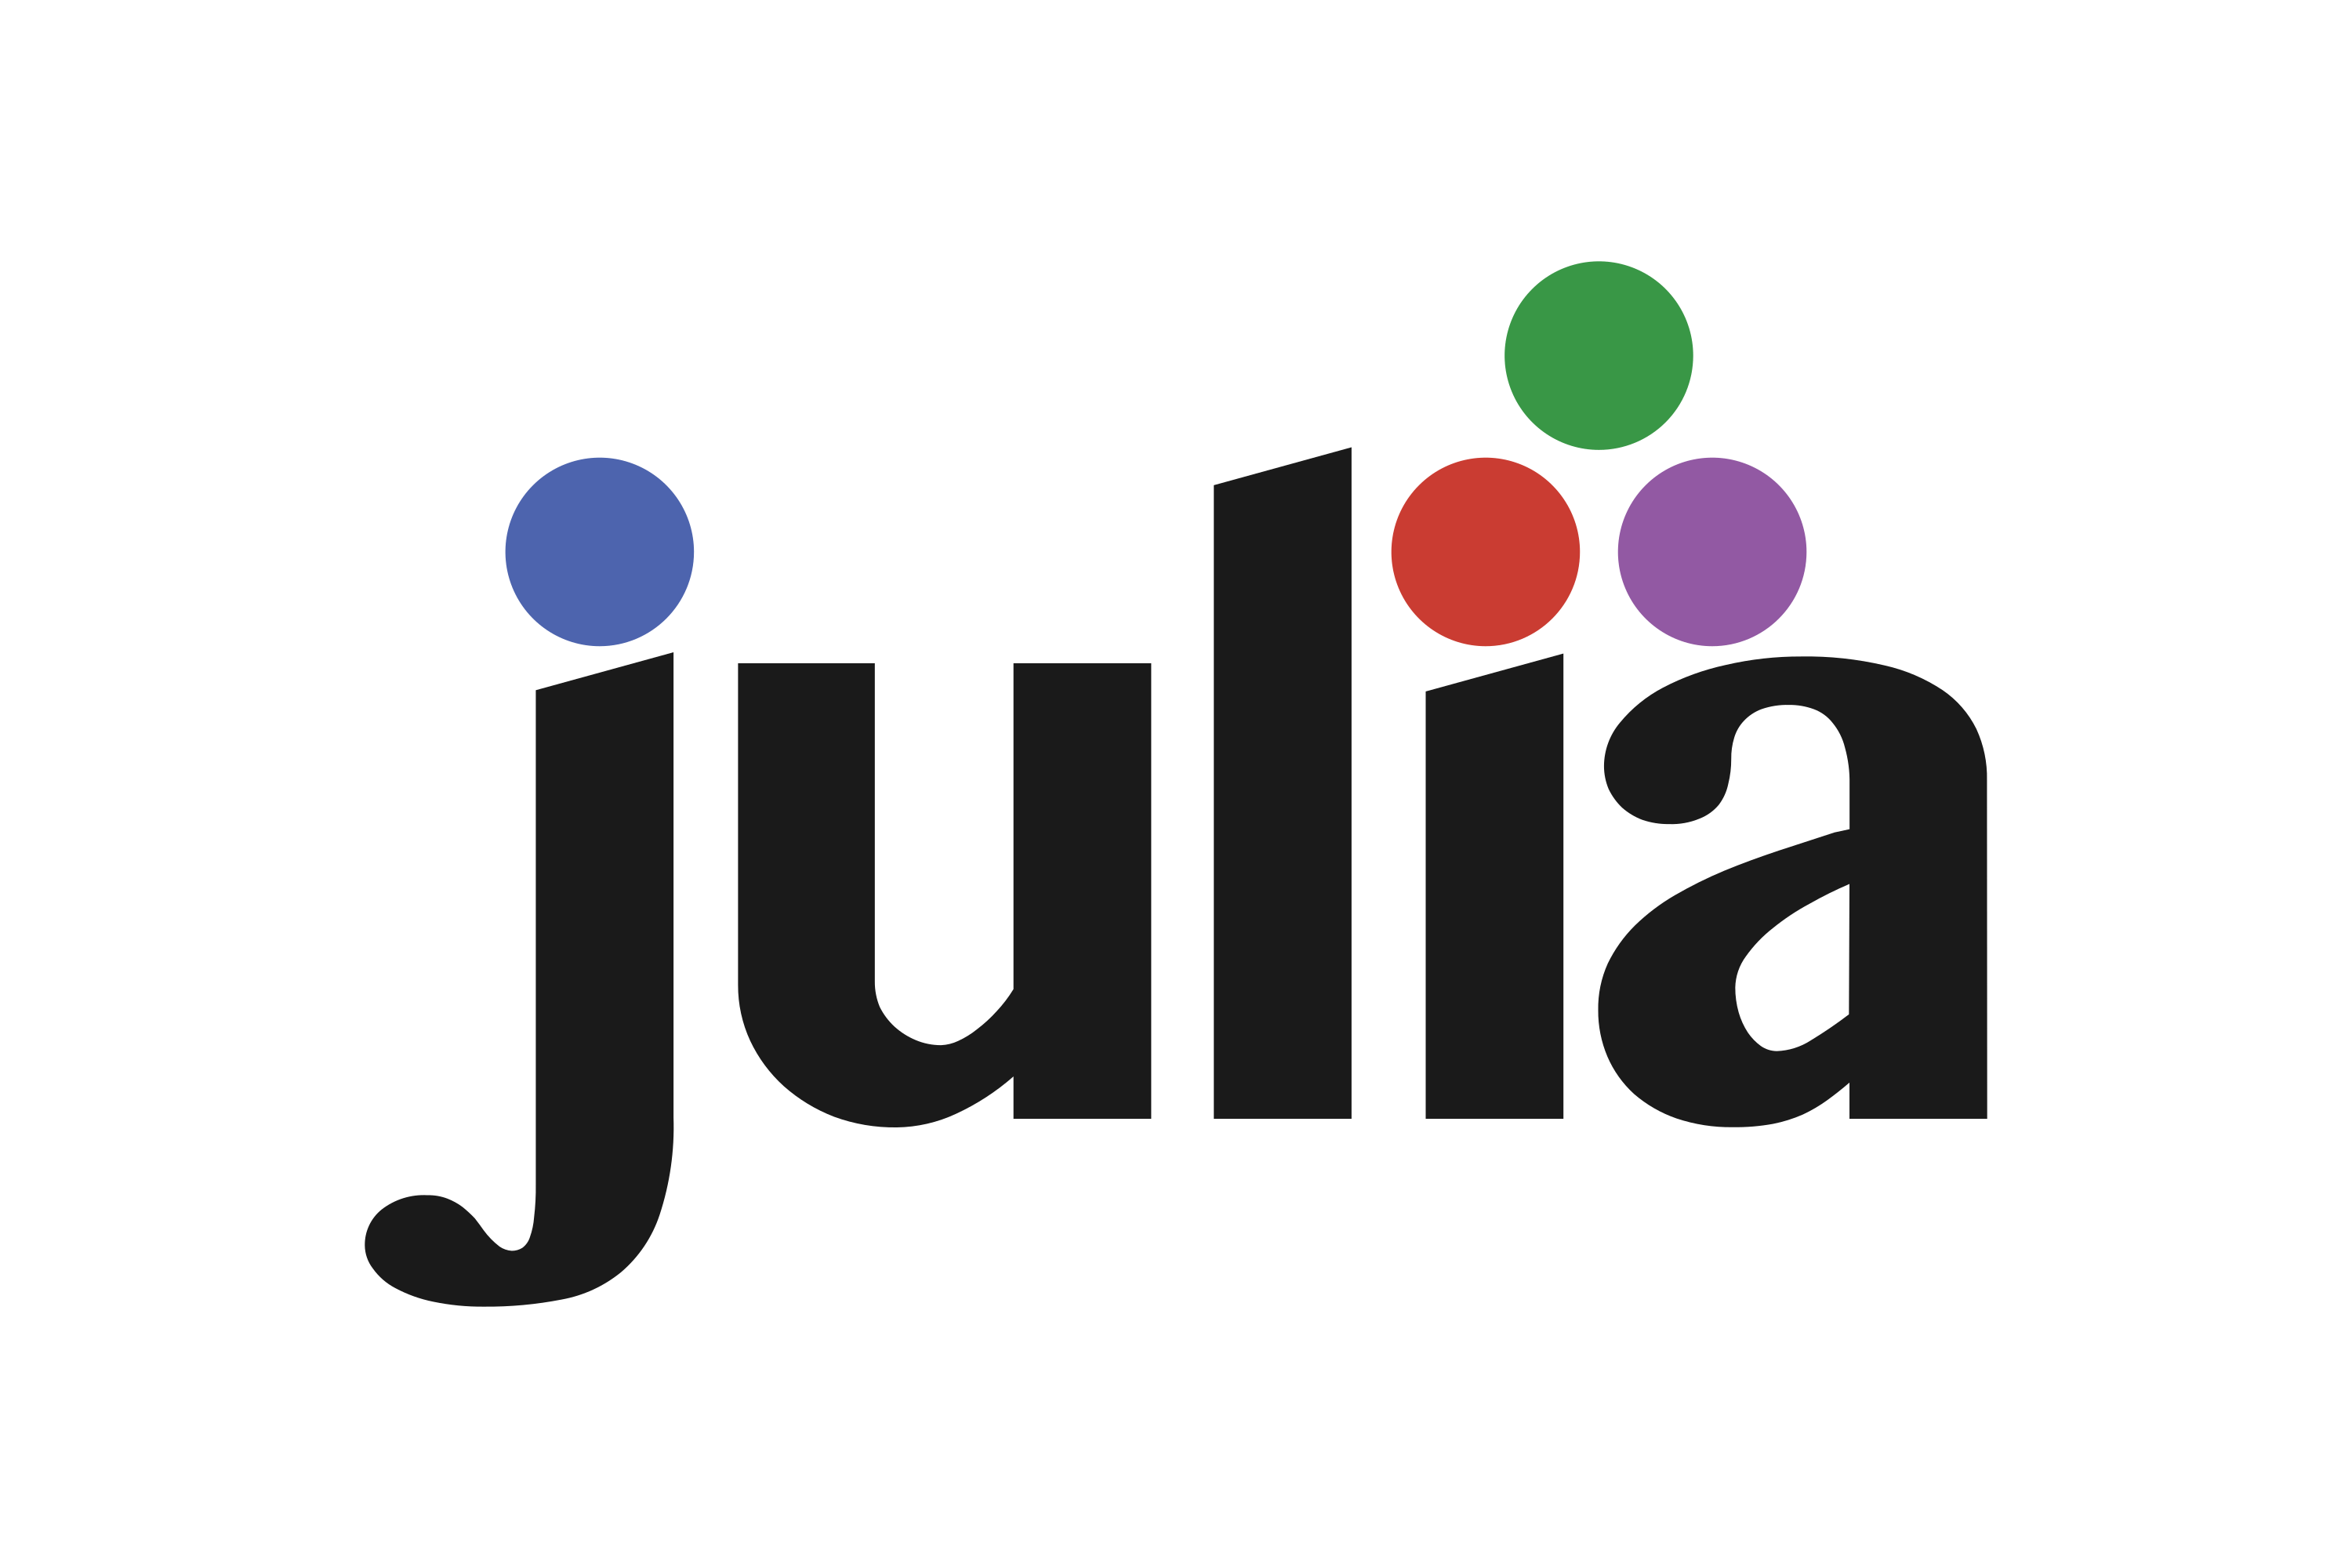 Download Julia Logo in SVG Vector or PNG File Format - Logo.wine